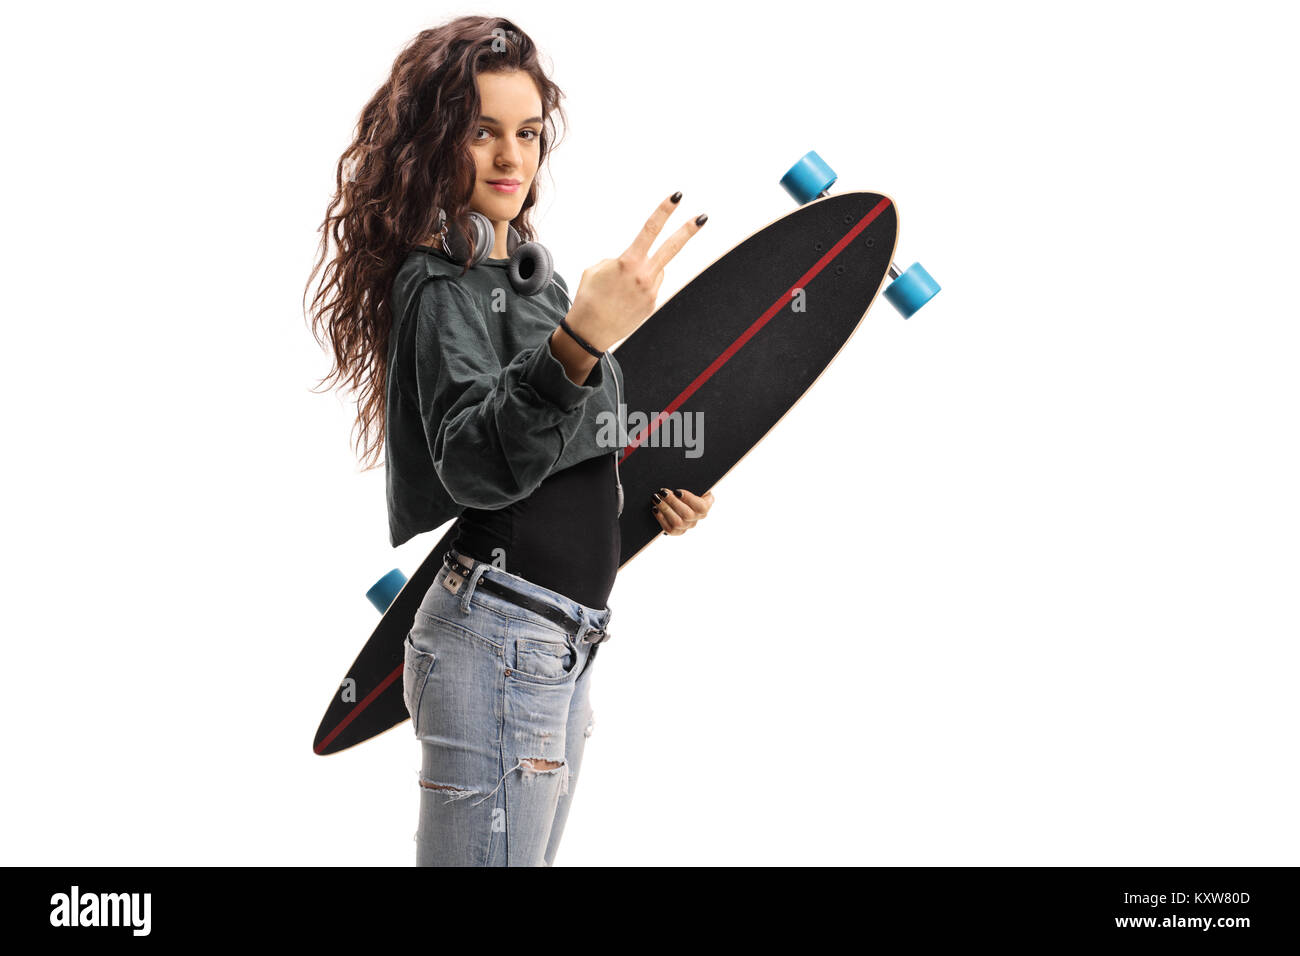 Adolescente avec un longboard faisant un geste de paix isolé sur fond blanc Banque D'Images